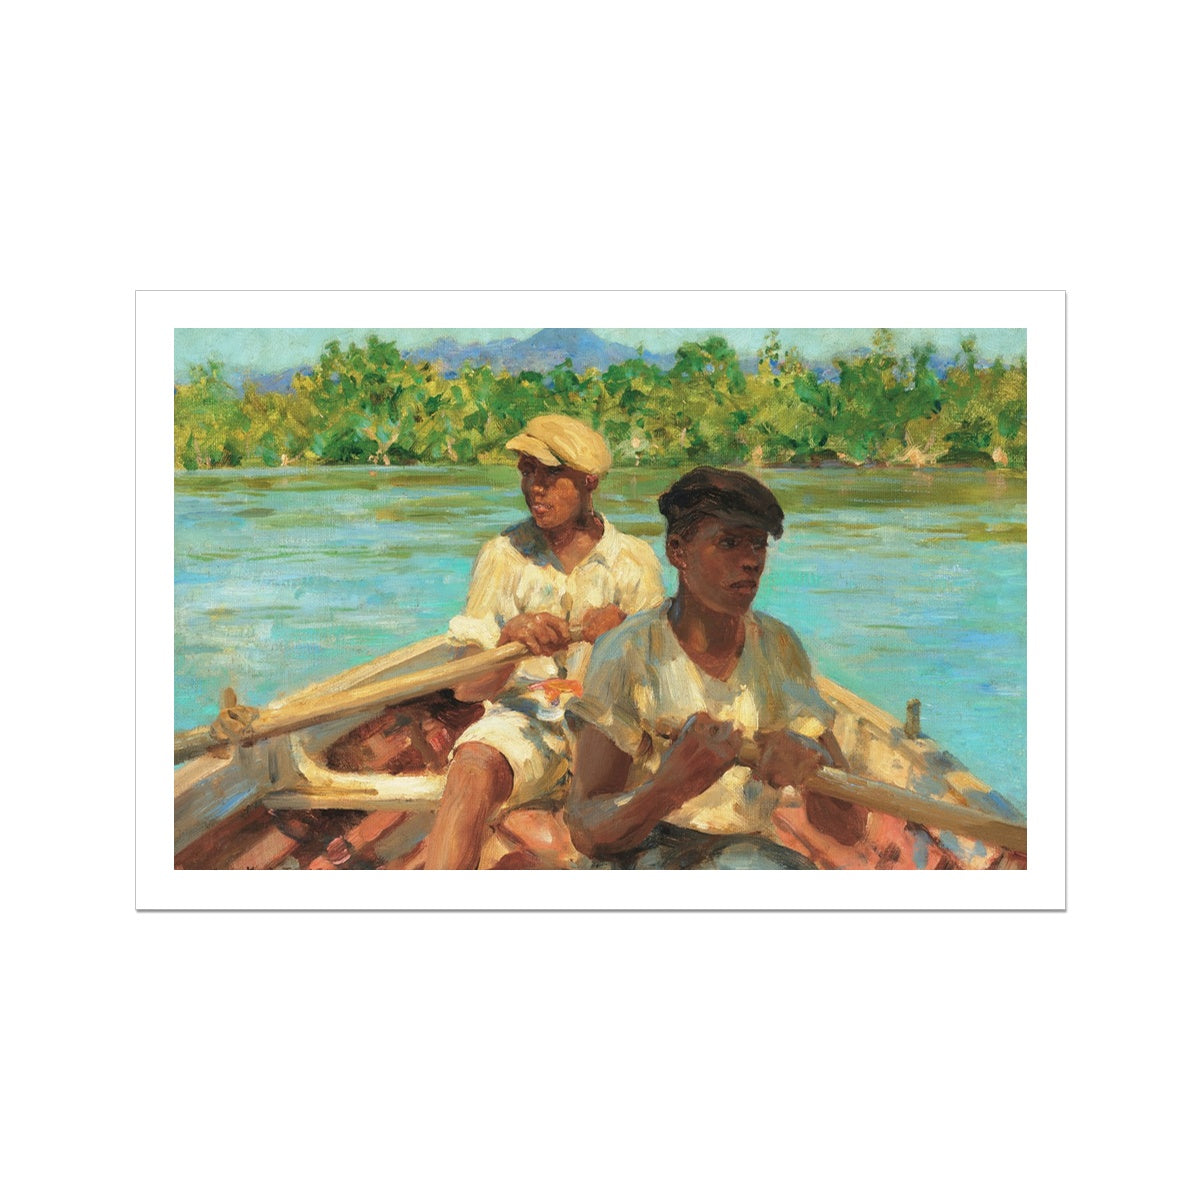 Henry Scott Tuke Open Edition Art Print. Black River Boatmen, Jamaica. Art Gallery Historic Art